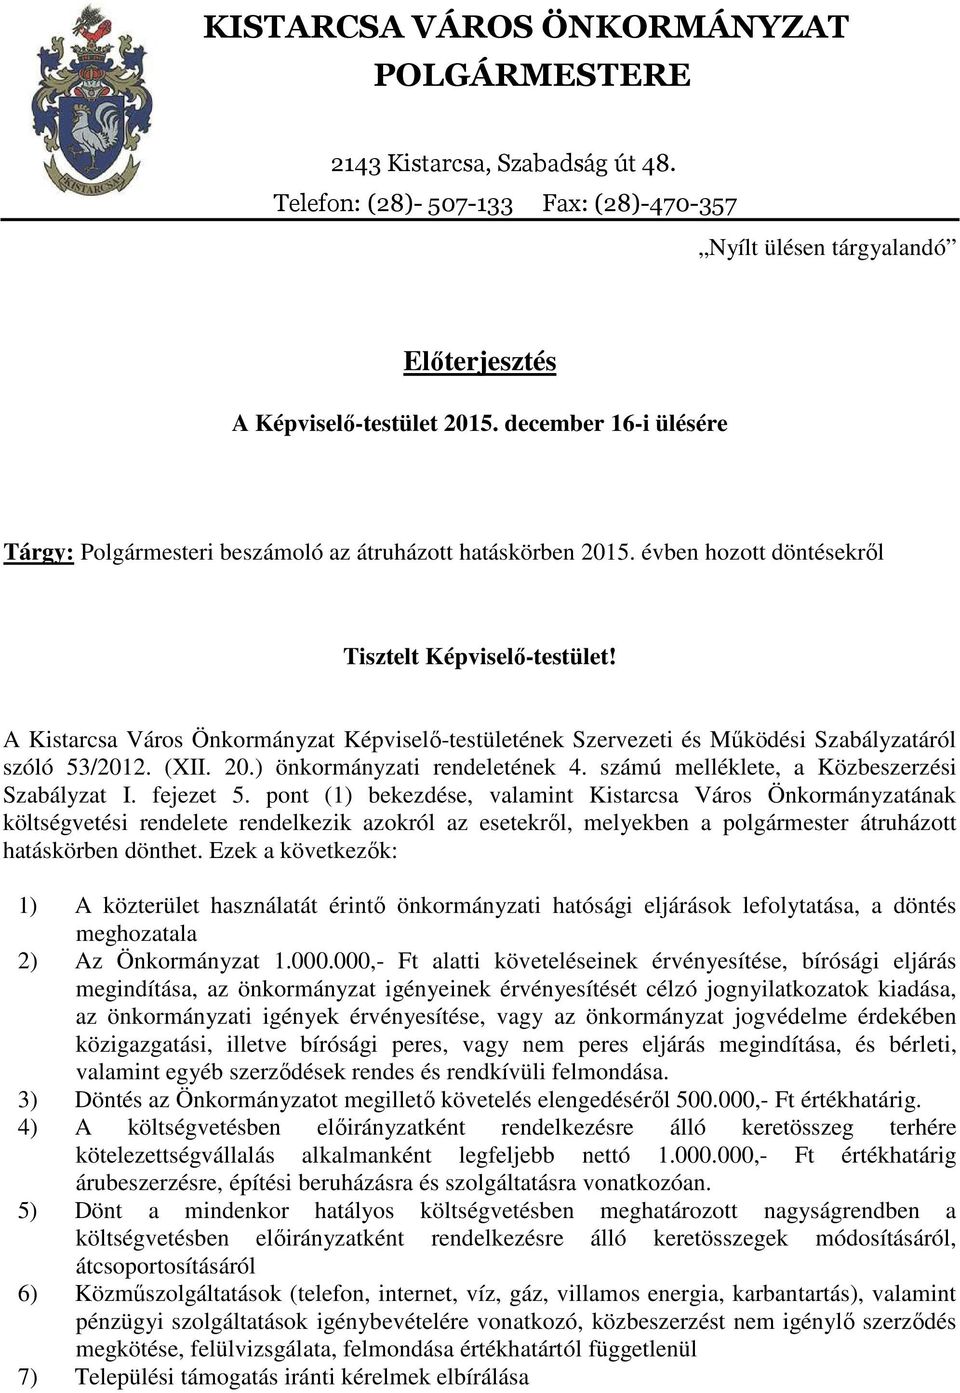 A Kistarcsa Város Önkormányzat Képviselő-testületének Szervezeti és Működési Szabályzatáról szóló 53/2012. (XII. 20.) önkormányzati rendeletének 4. számú melléklete, a Közbeszerzési Szabályzat I.